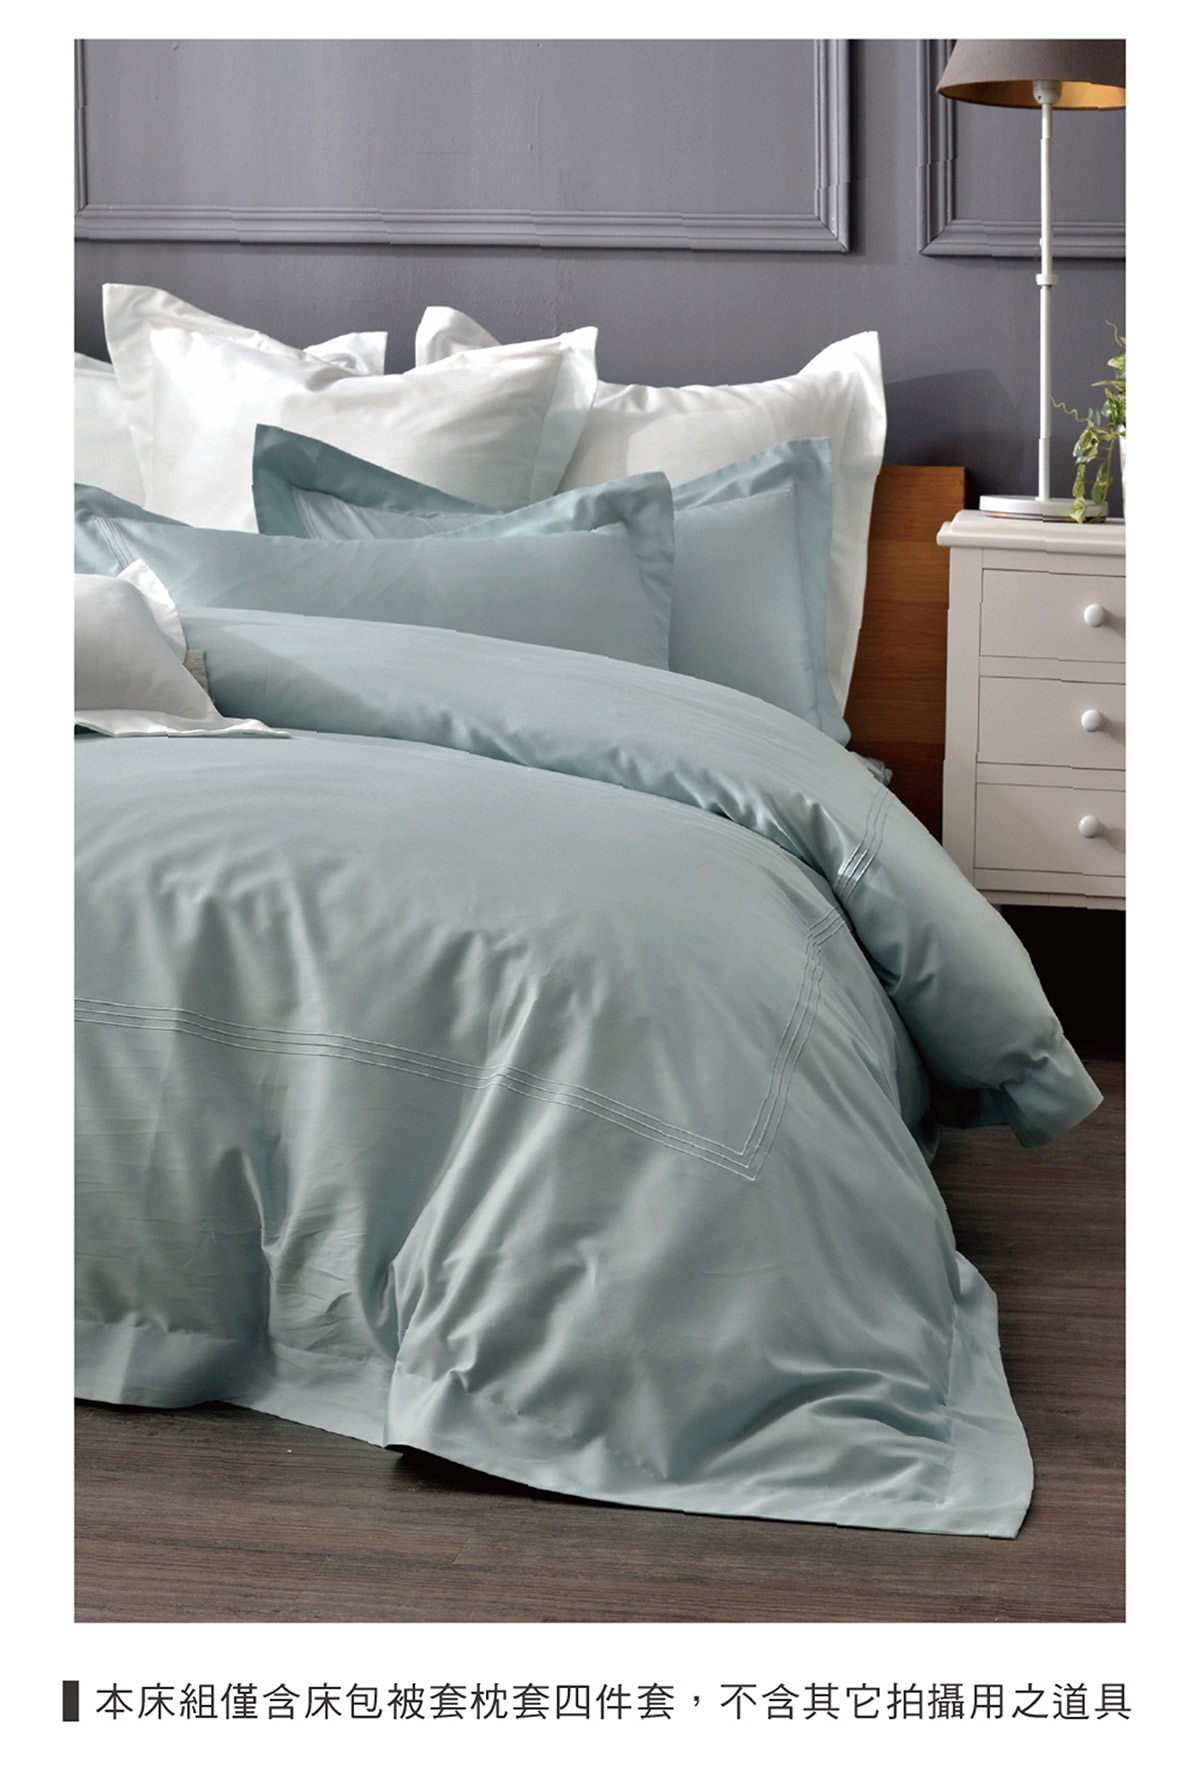 雙人刺繡被套床包四件組-寧靜藍,本床組僅含床包被套枕套四件套組.